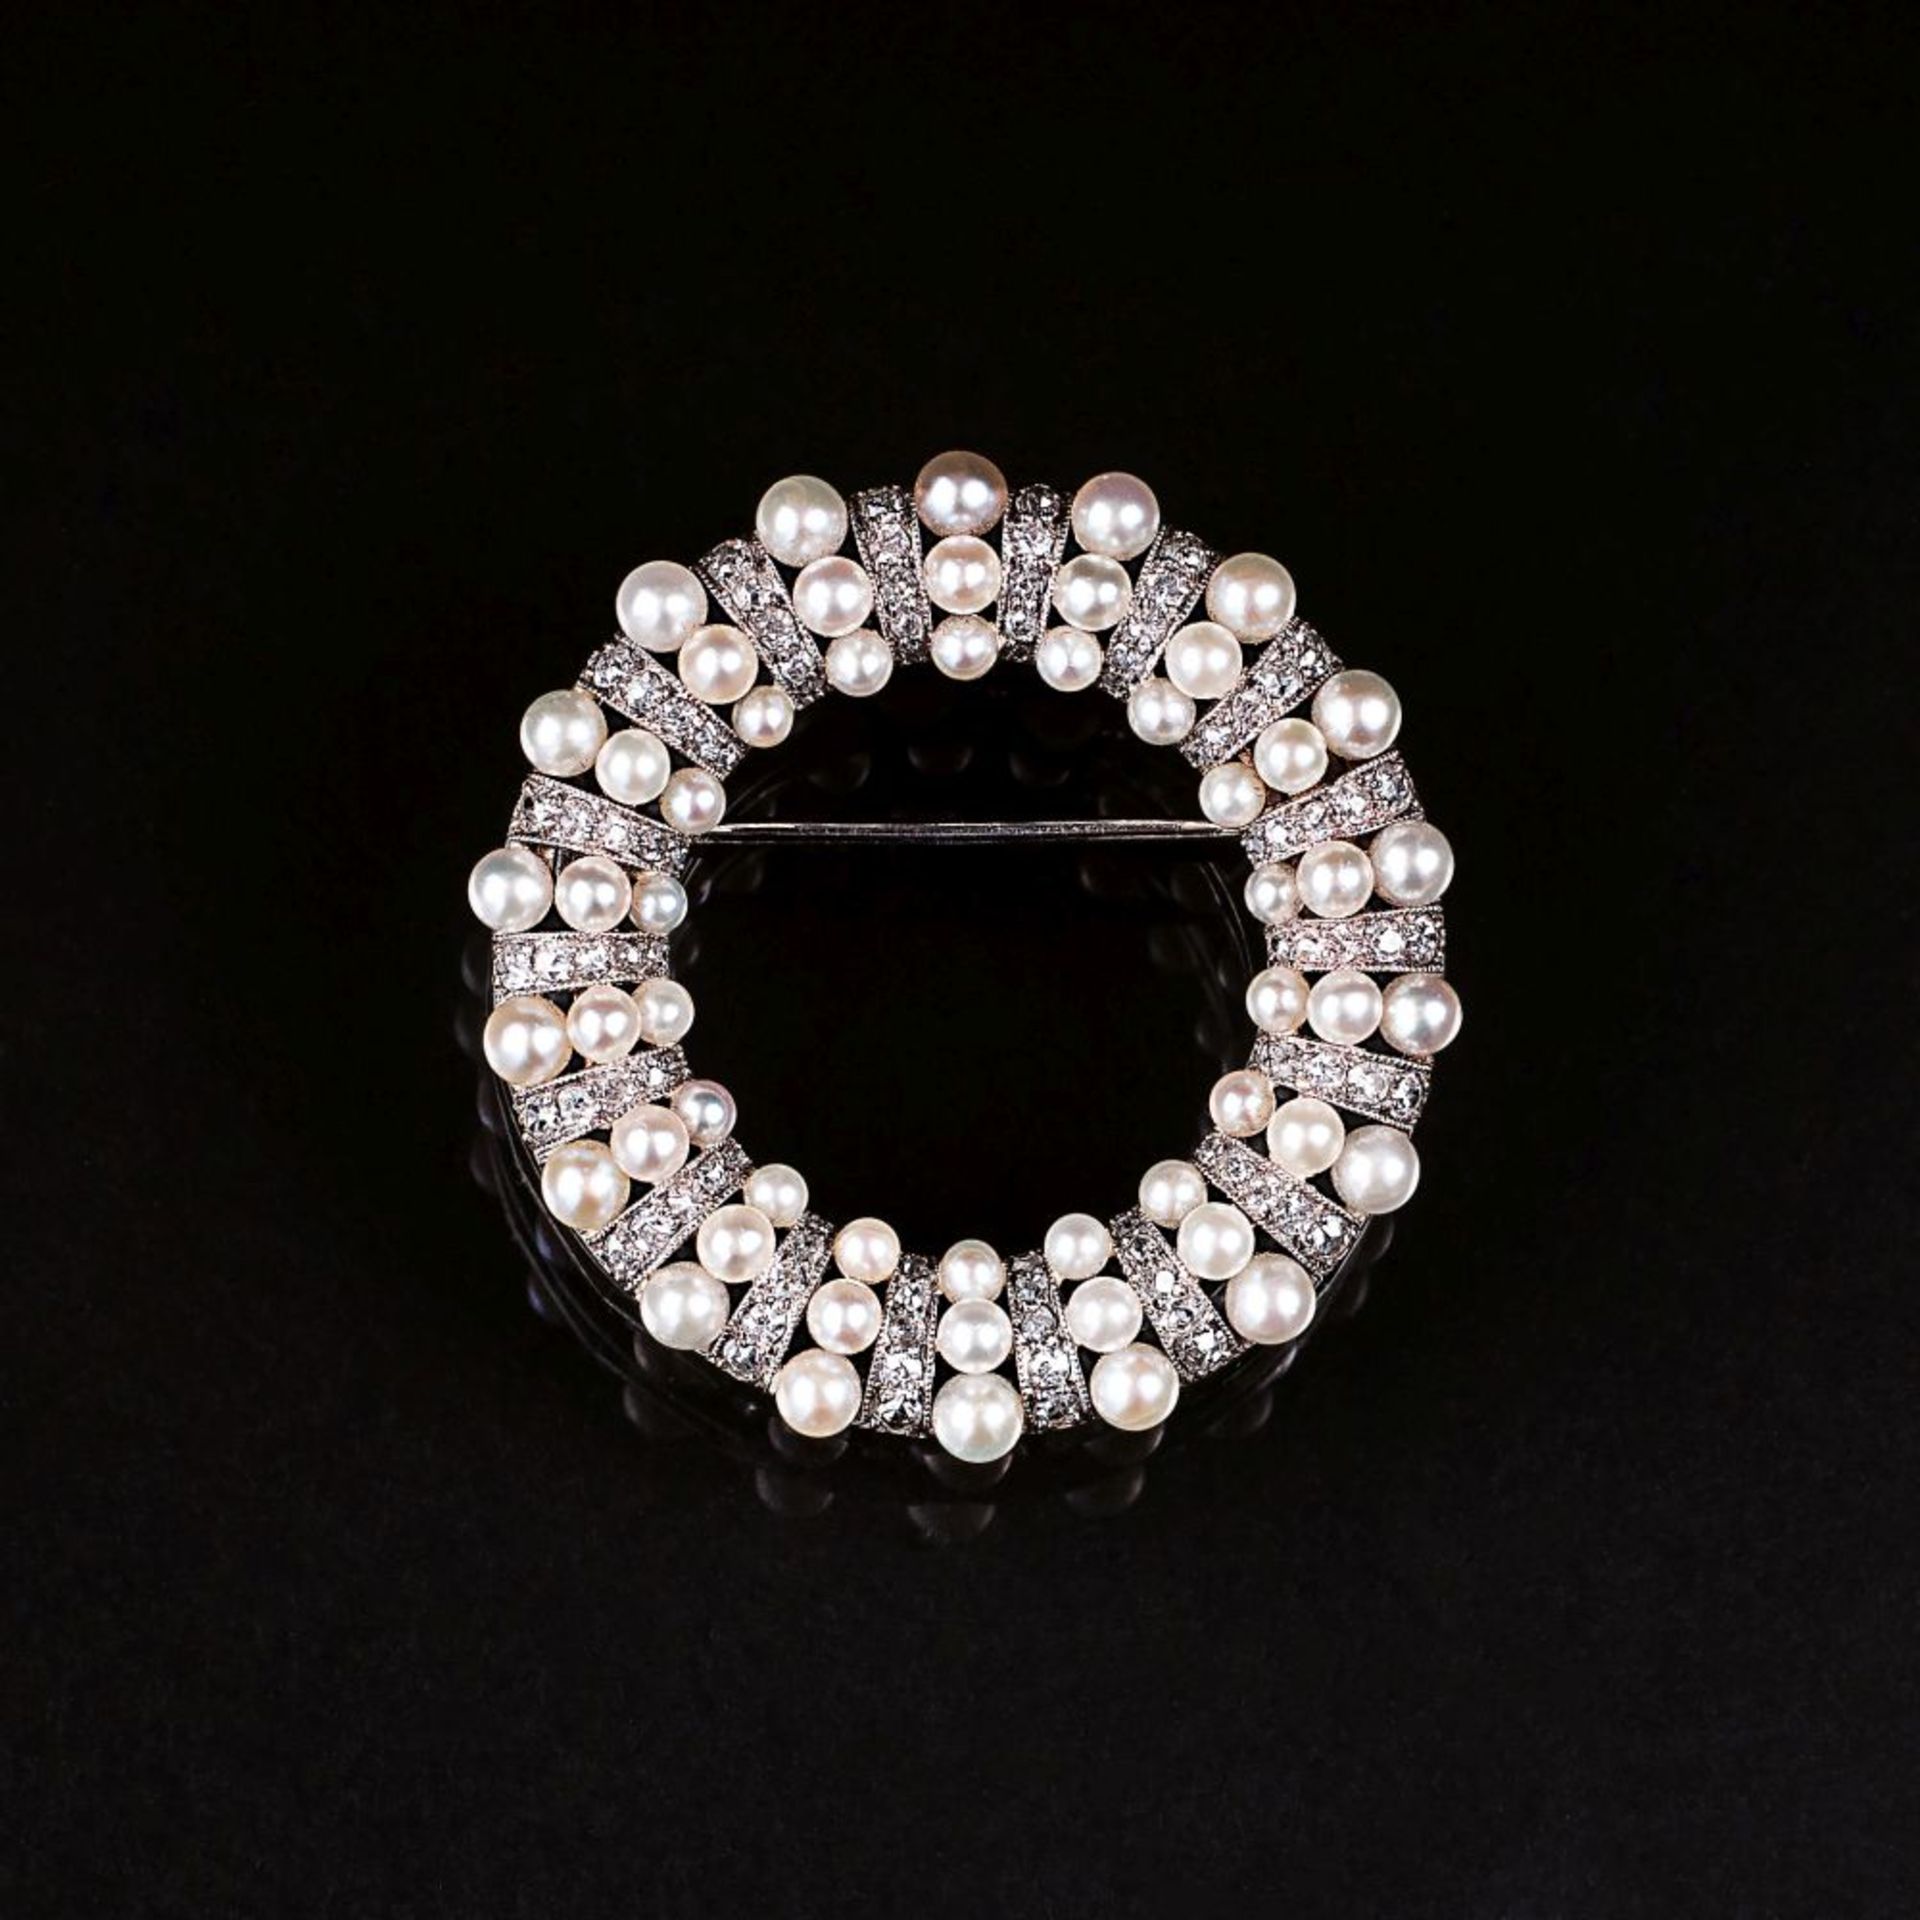 Jugendstil-Brosche mit Perlen und Diamanten.